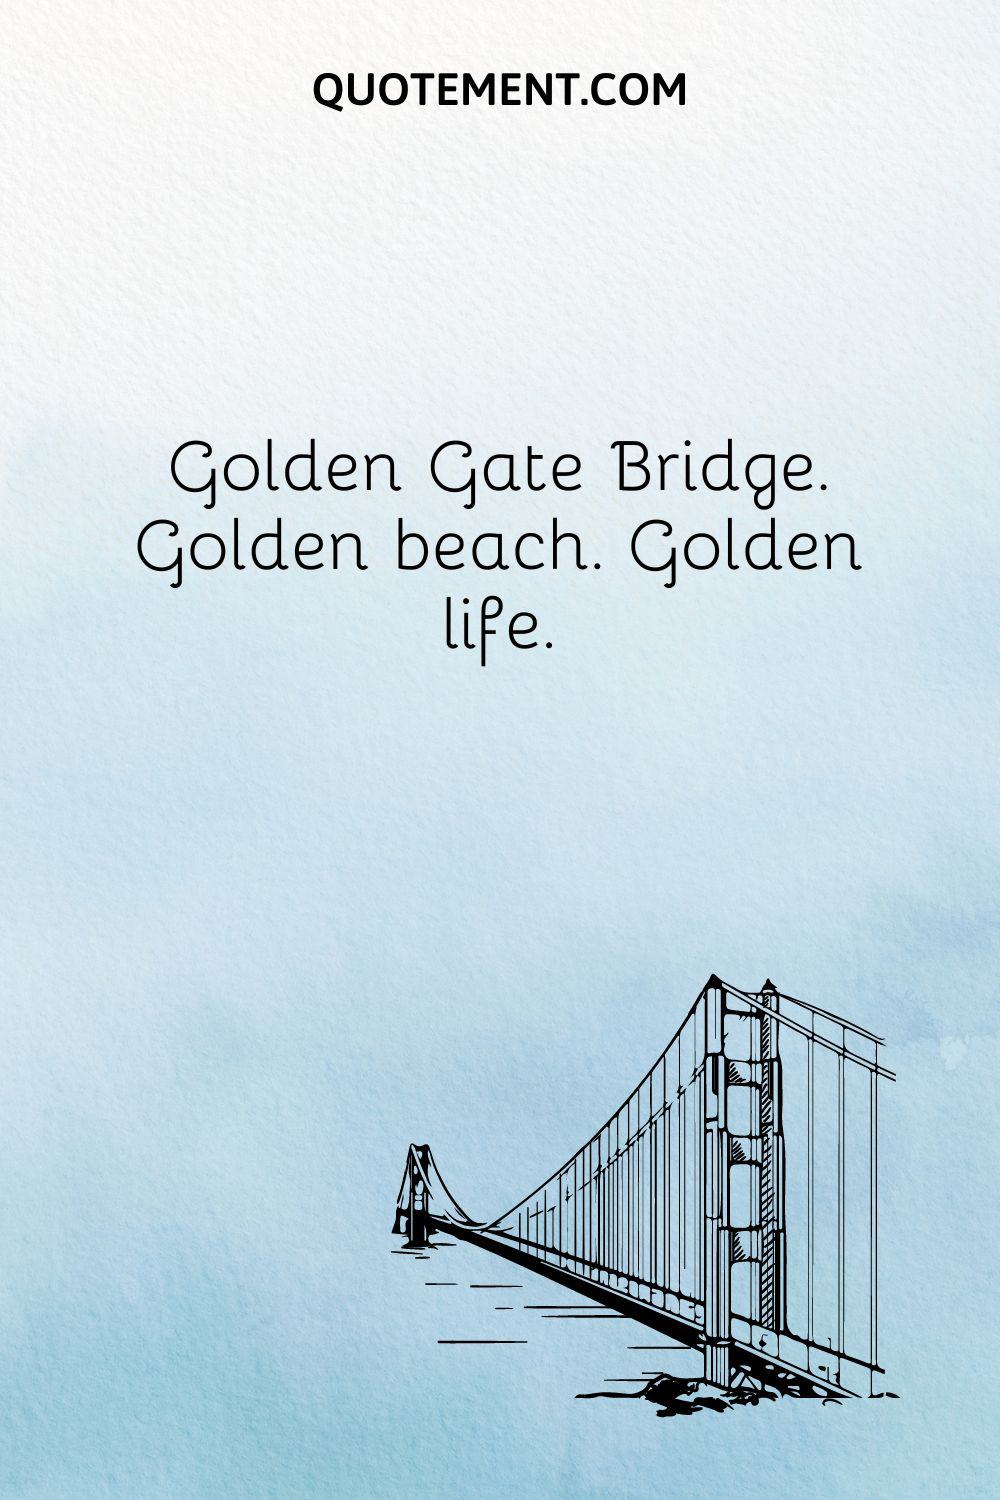 Golden Gate Bridge. Golden beach. Golden life.